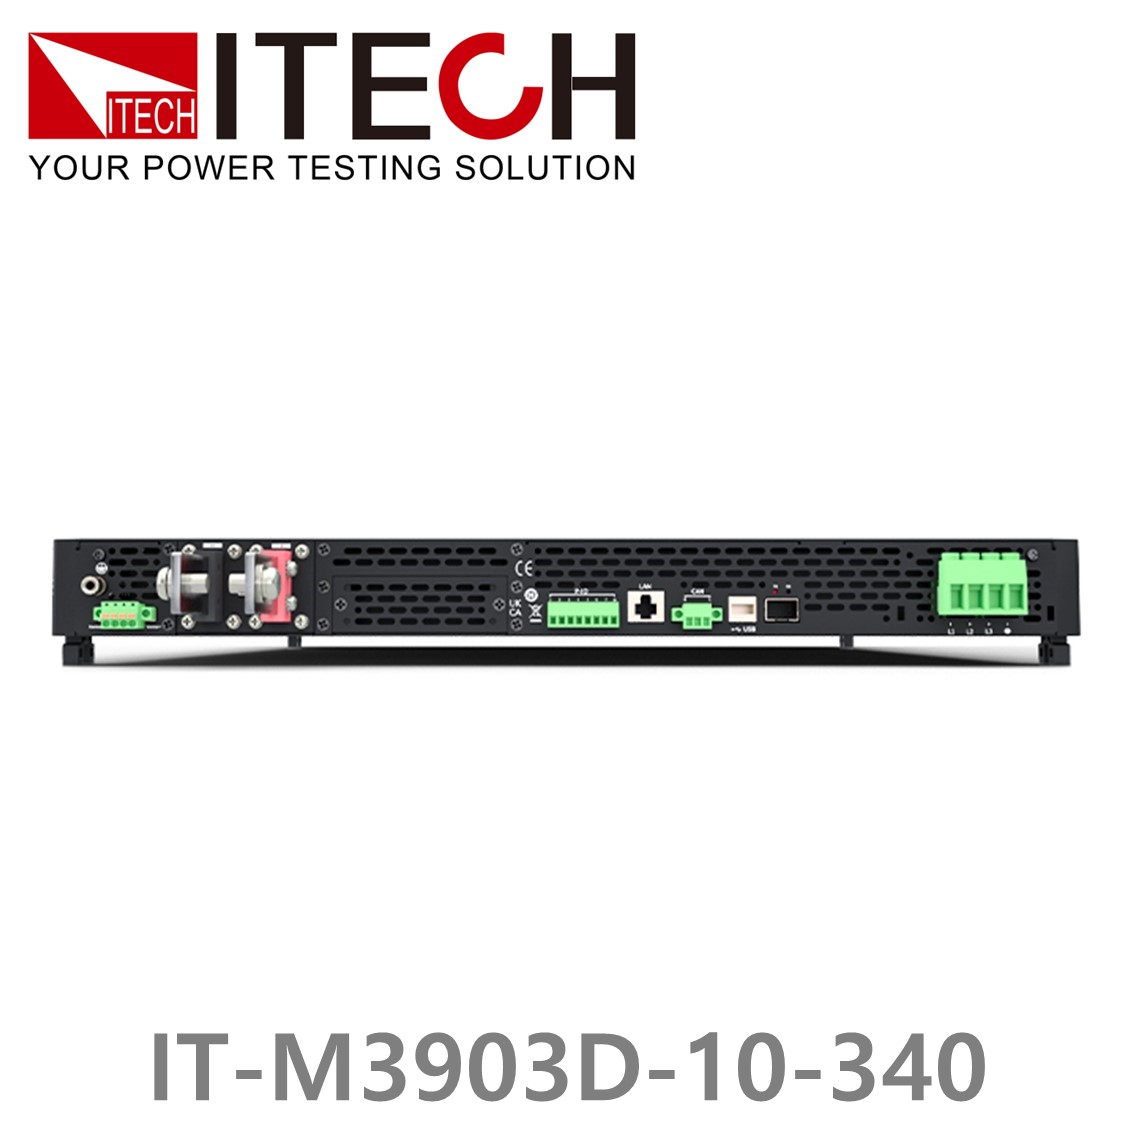 [ ITECH ] IT-M3903D-10-340 양방향 프로그래머블 DC전원공급기, DC파워서플라이